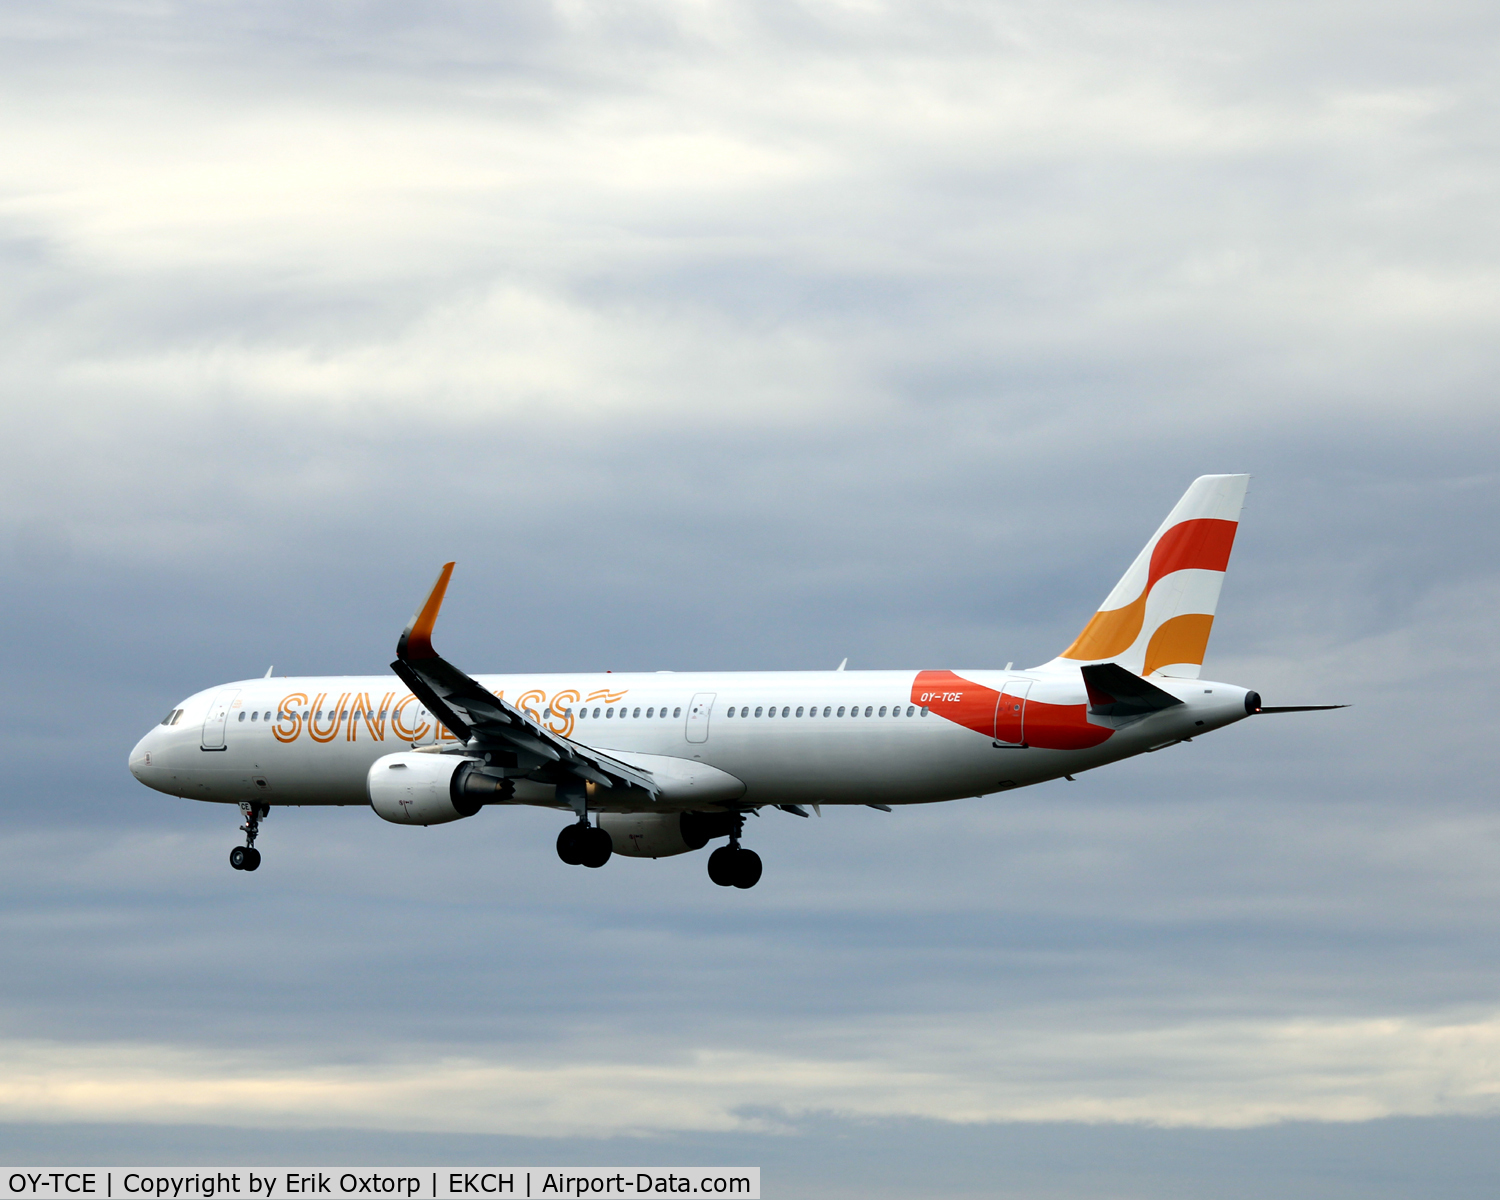 OY-TCE, 2014 Airbus A321-211 C/N 6342, OY-TCE landing rw 22L